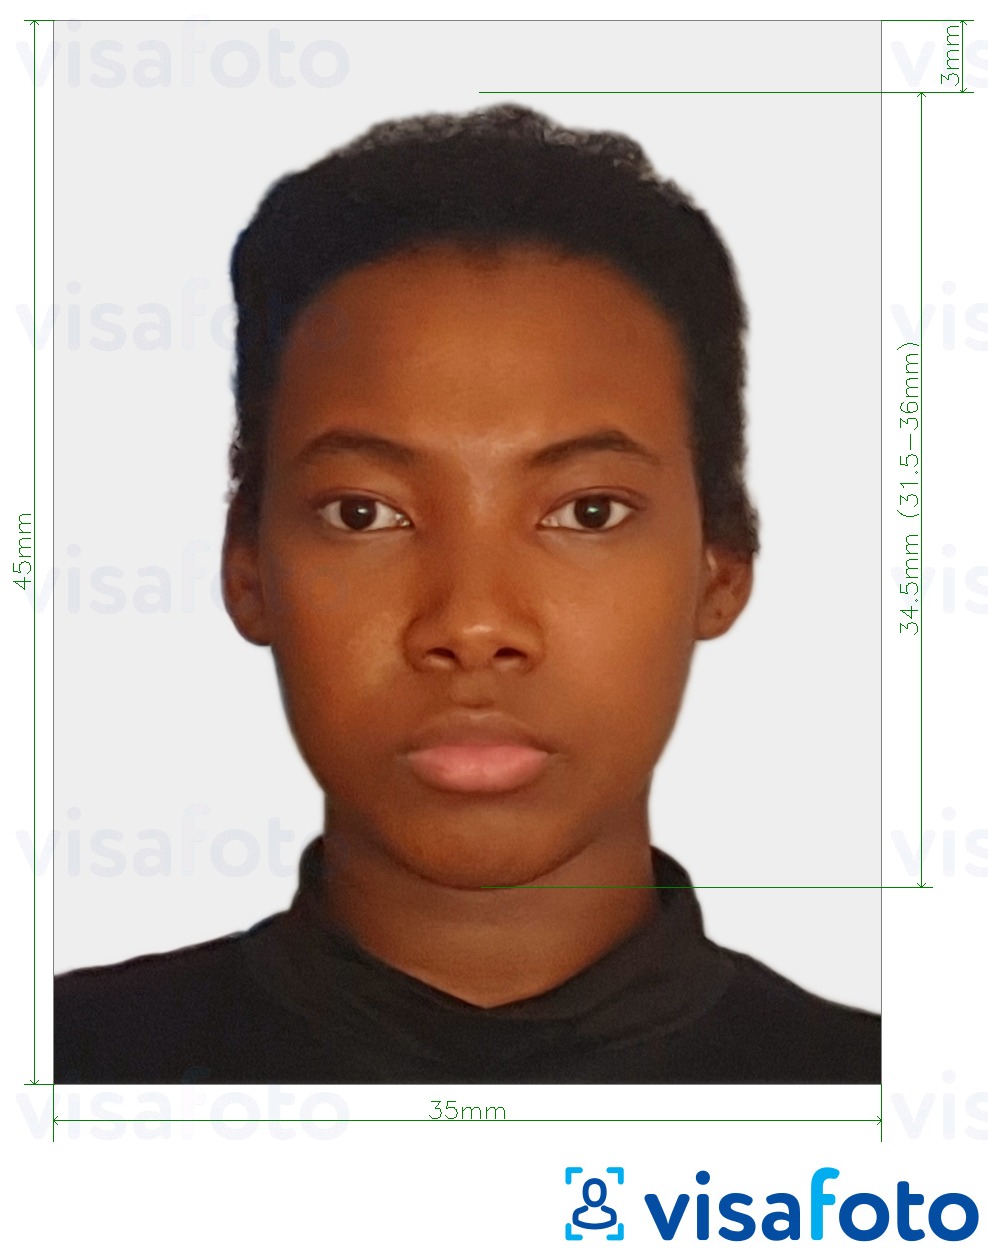 Példa a Togo vízum 4.5x3.5 cm (45x35mm) fényképre pontos méret meghatározással